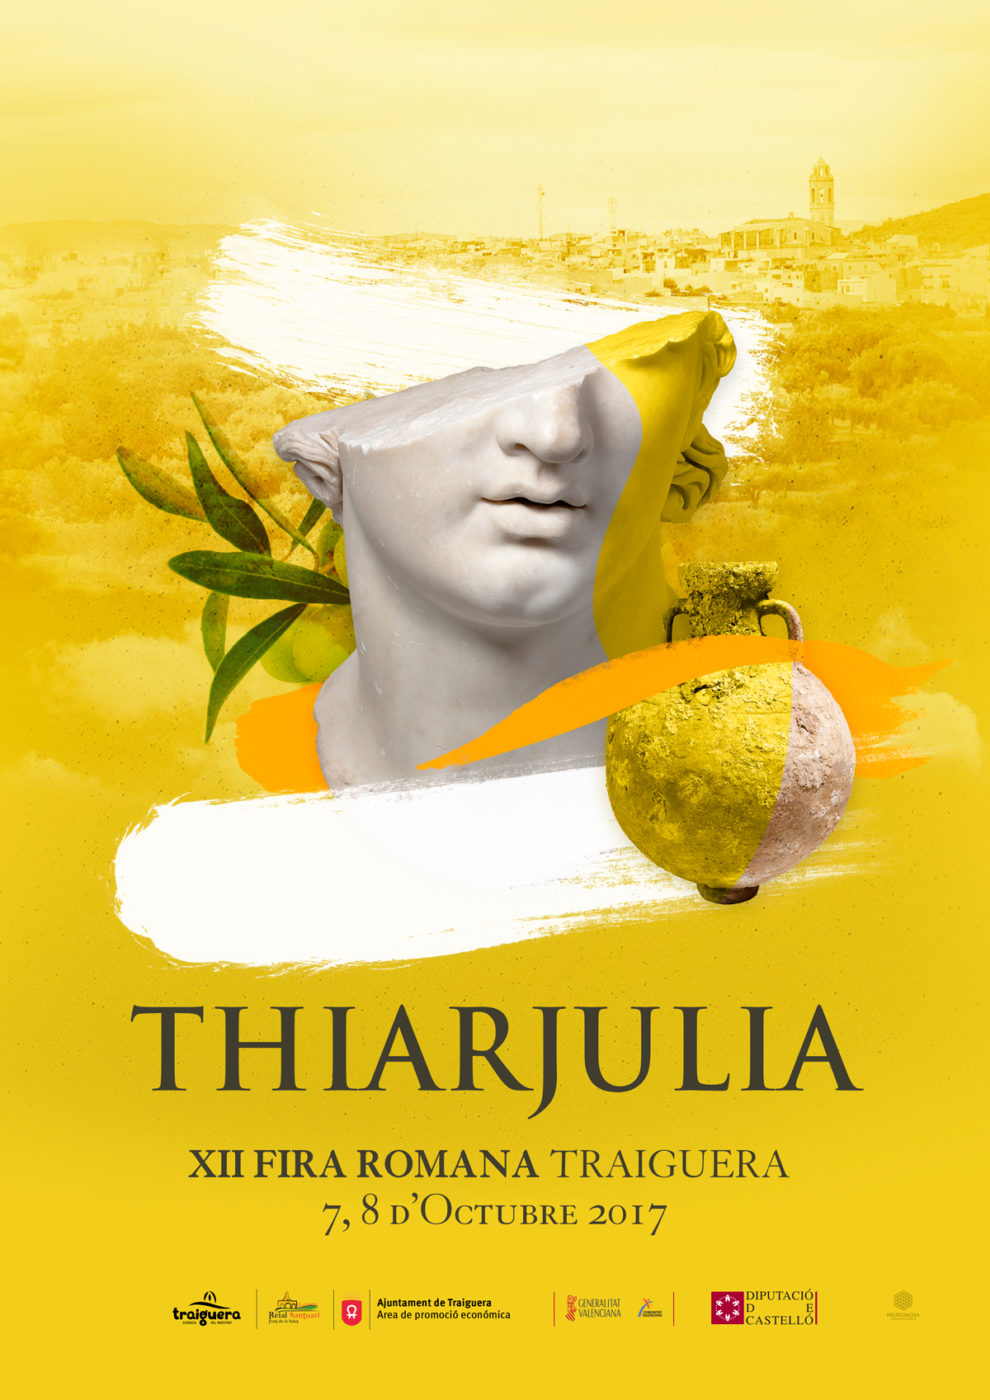 Traiguera es prepara per celebrar el 7 i 8 d'octubre la 12a Fira Romana Thiar Julia